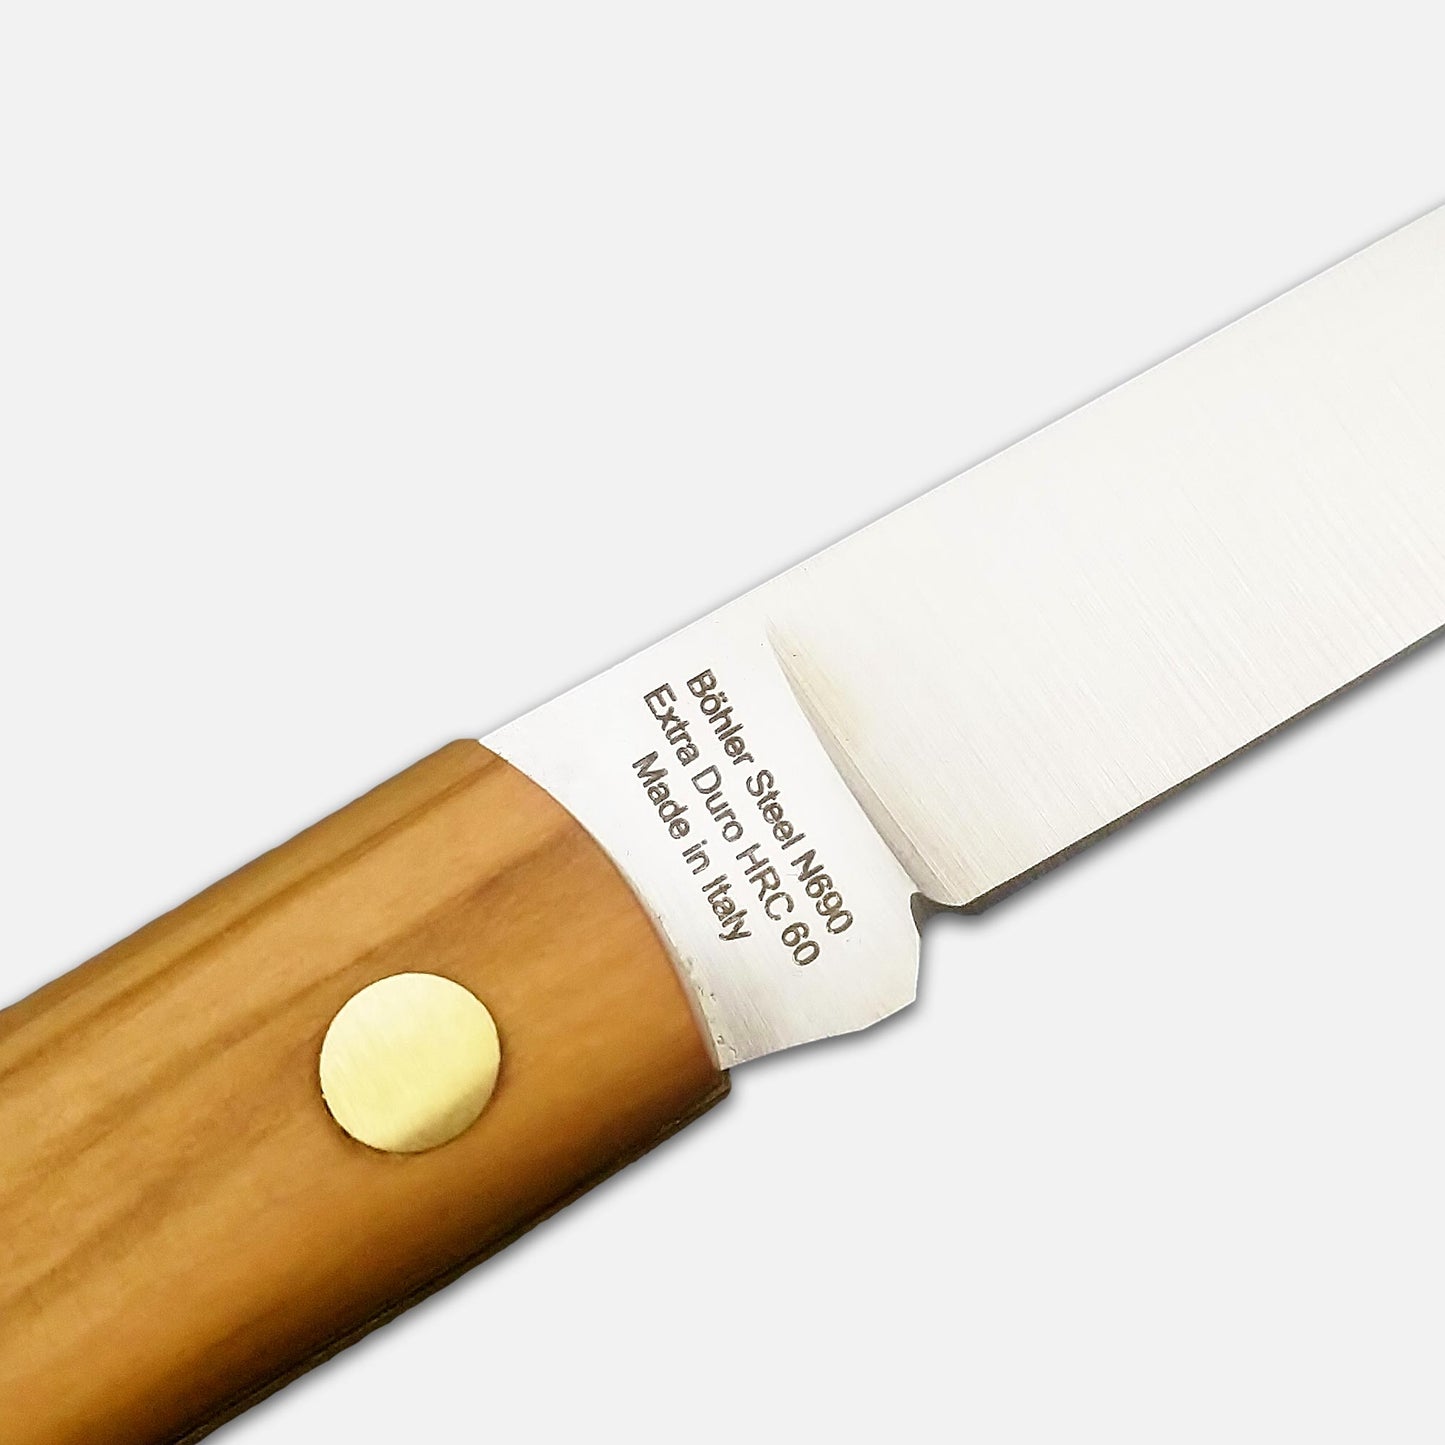 
                  
                    FOLDING POCKET KNIFE 231 IN STAINLESS STEEL Böhler n690 - OLIVE WOOD HANDLE
                  
                